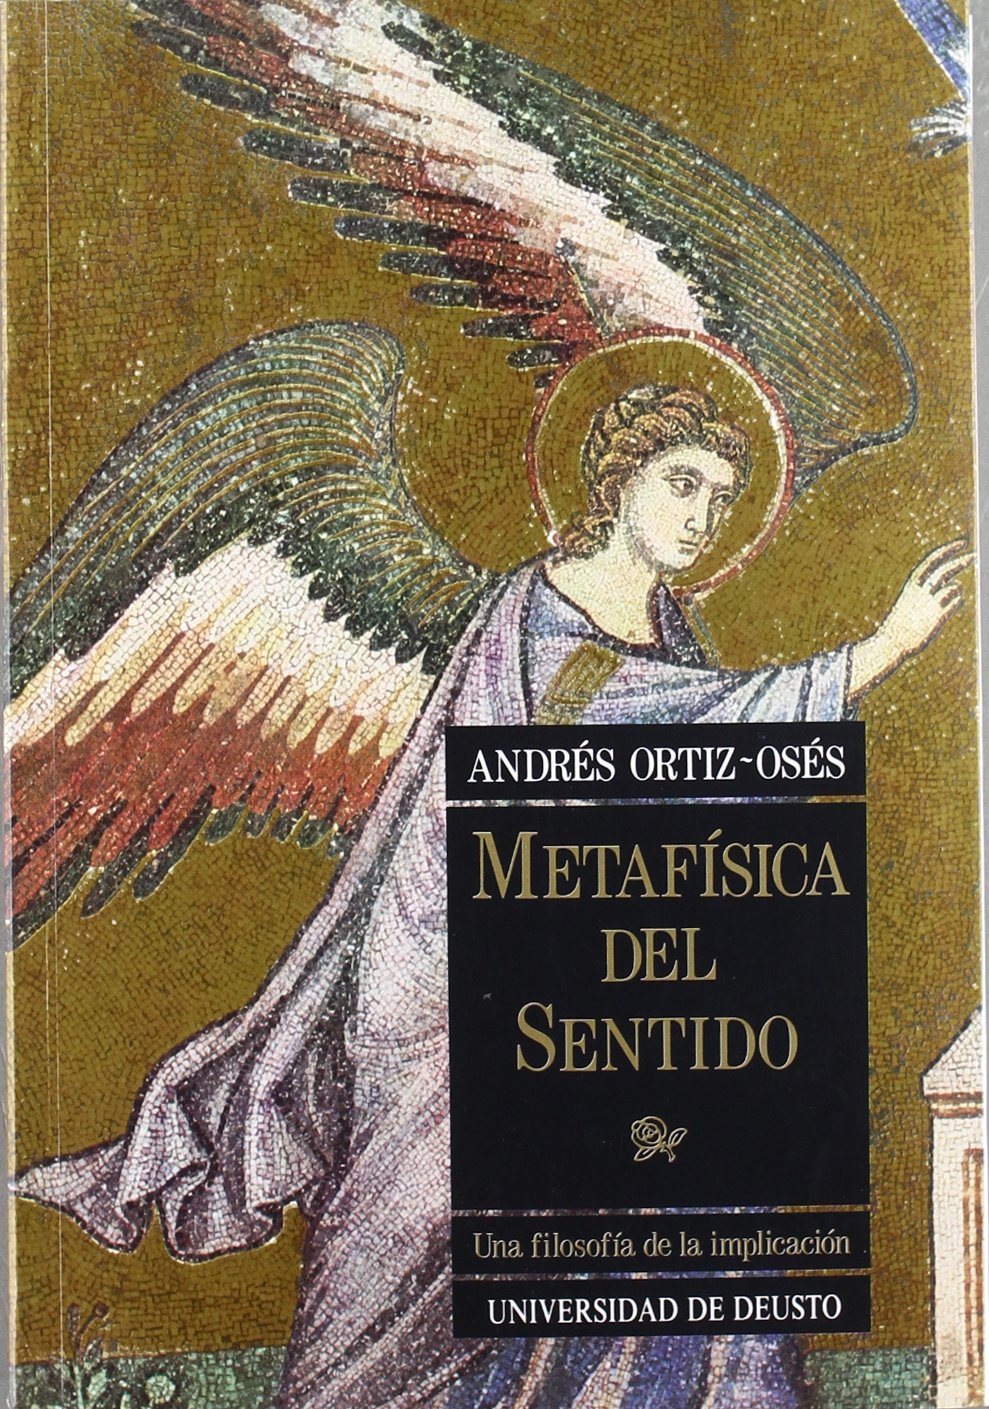 Imagen de portada del libro Metafísica del sentido